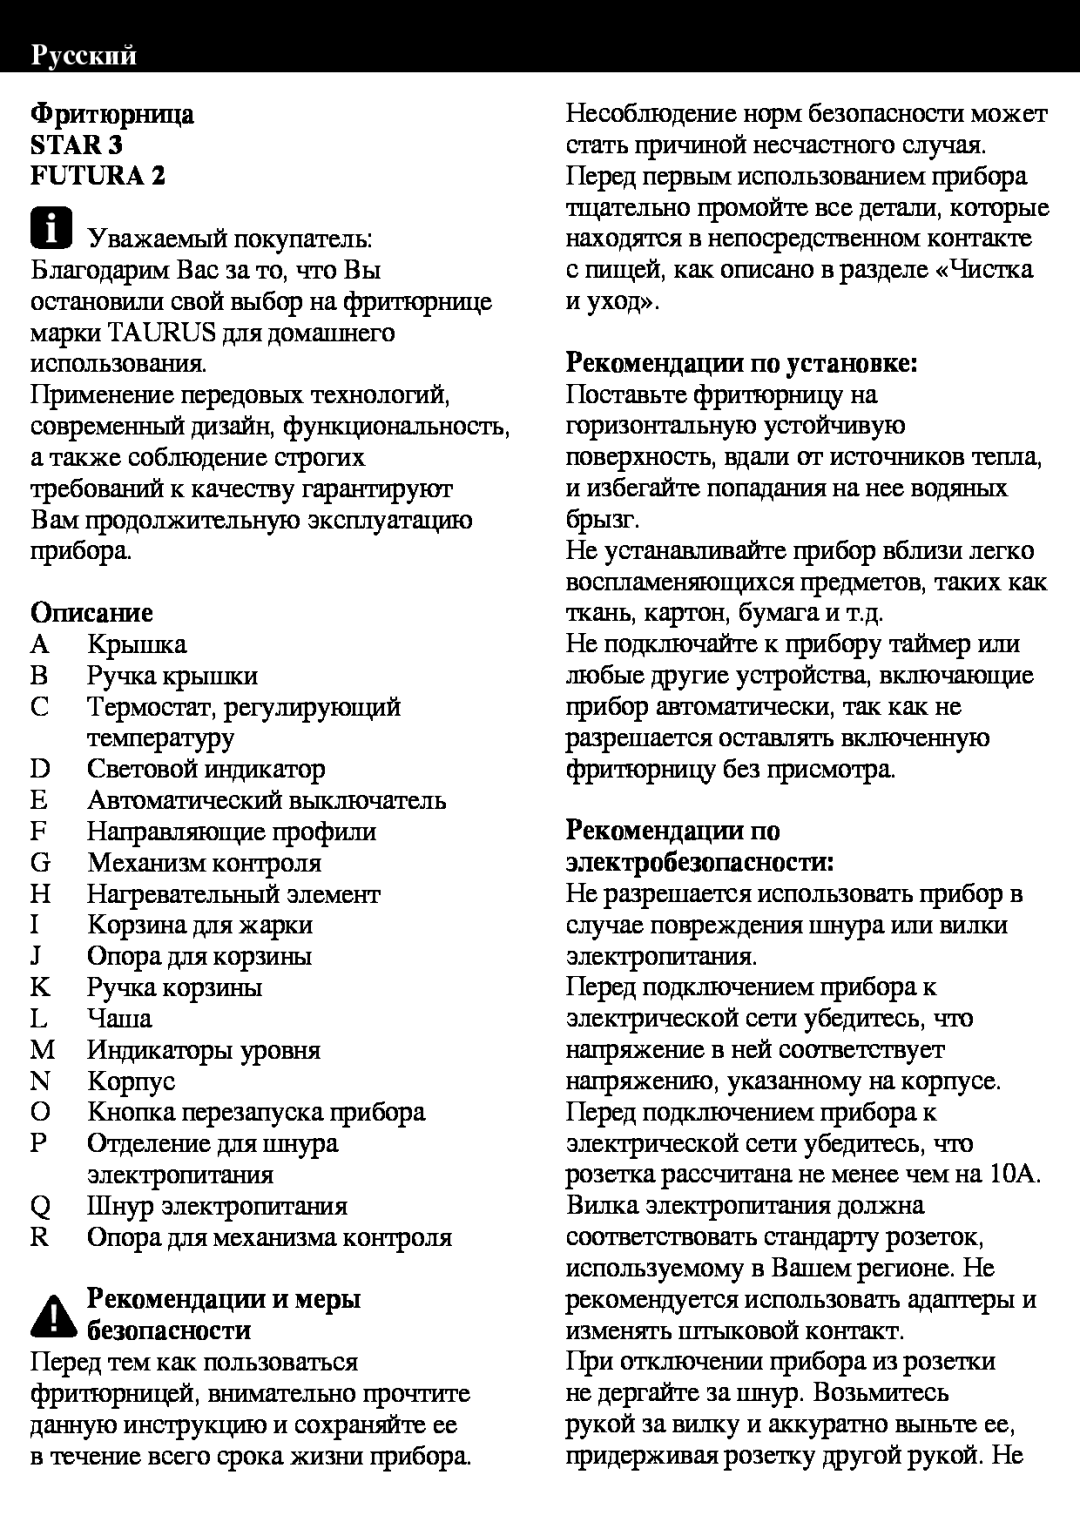 Taurus Group Star 3 manual Русский, Фритюрница STAR 3 FUTURA, Описание A Крышка, Рекомендации и меры безопасности 